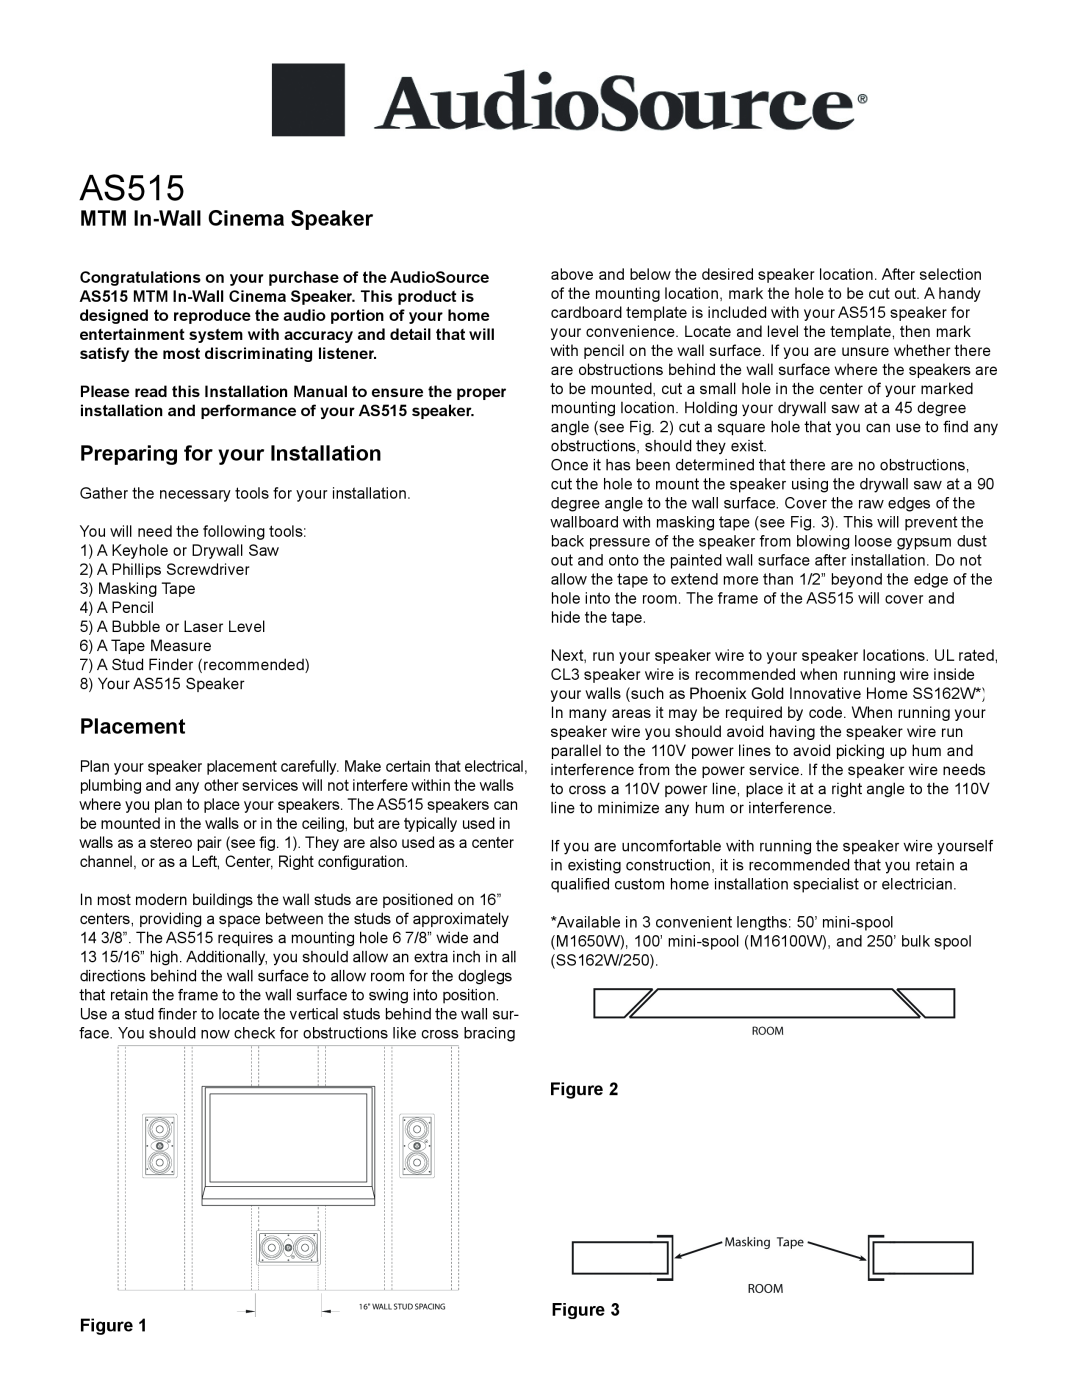 AudioSource MTM In-Wall Cinema Speaker installation manual AS515, MTM In-WallCinema Speaker, Placement 